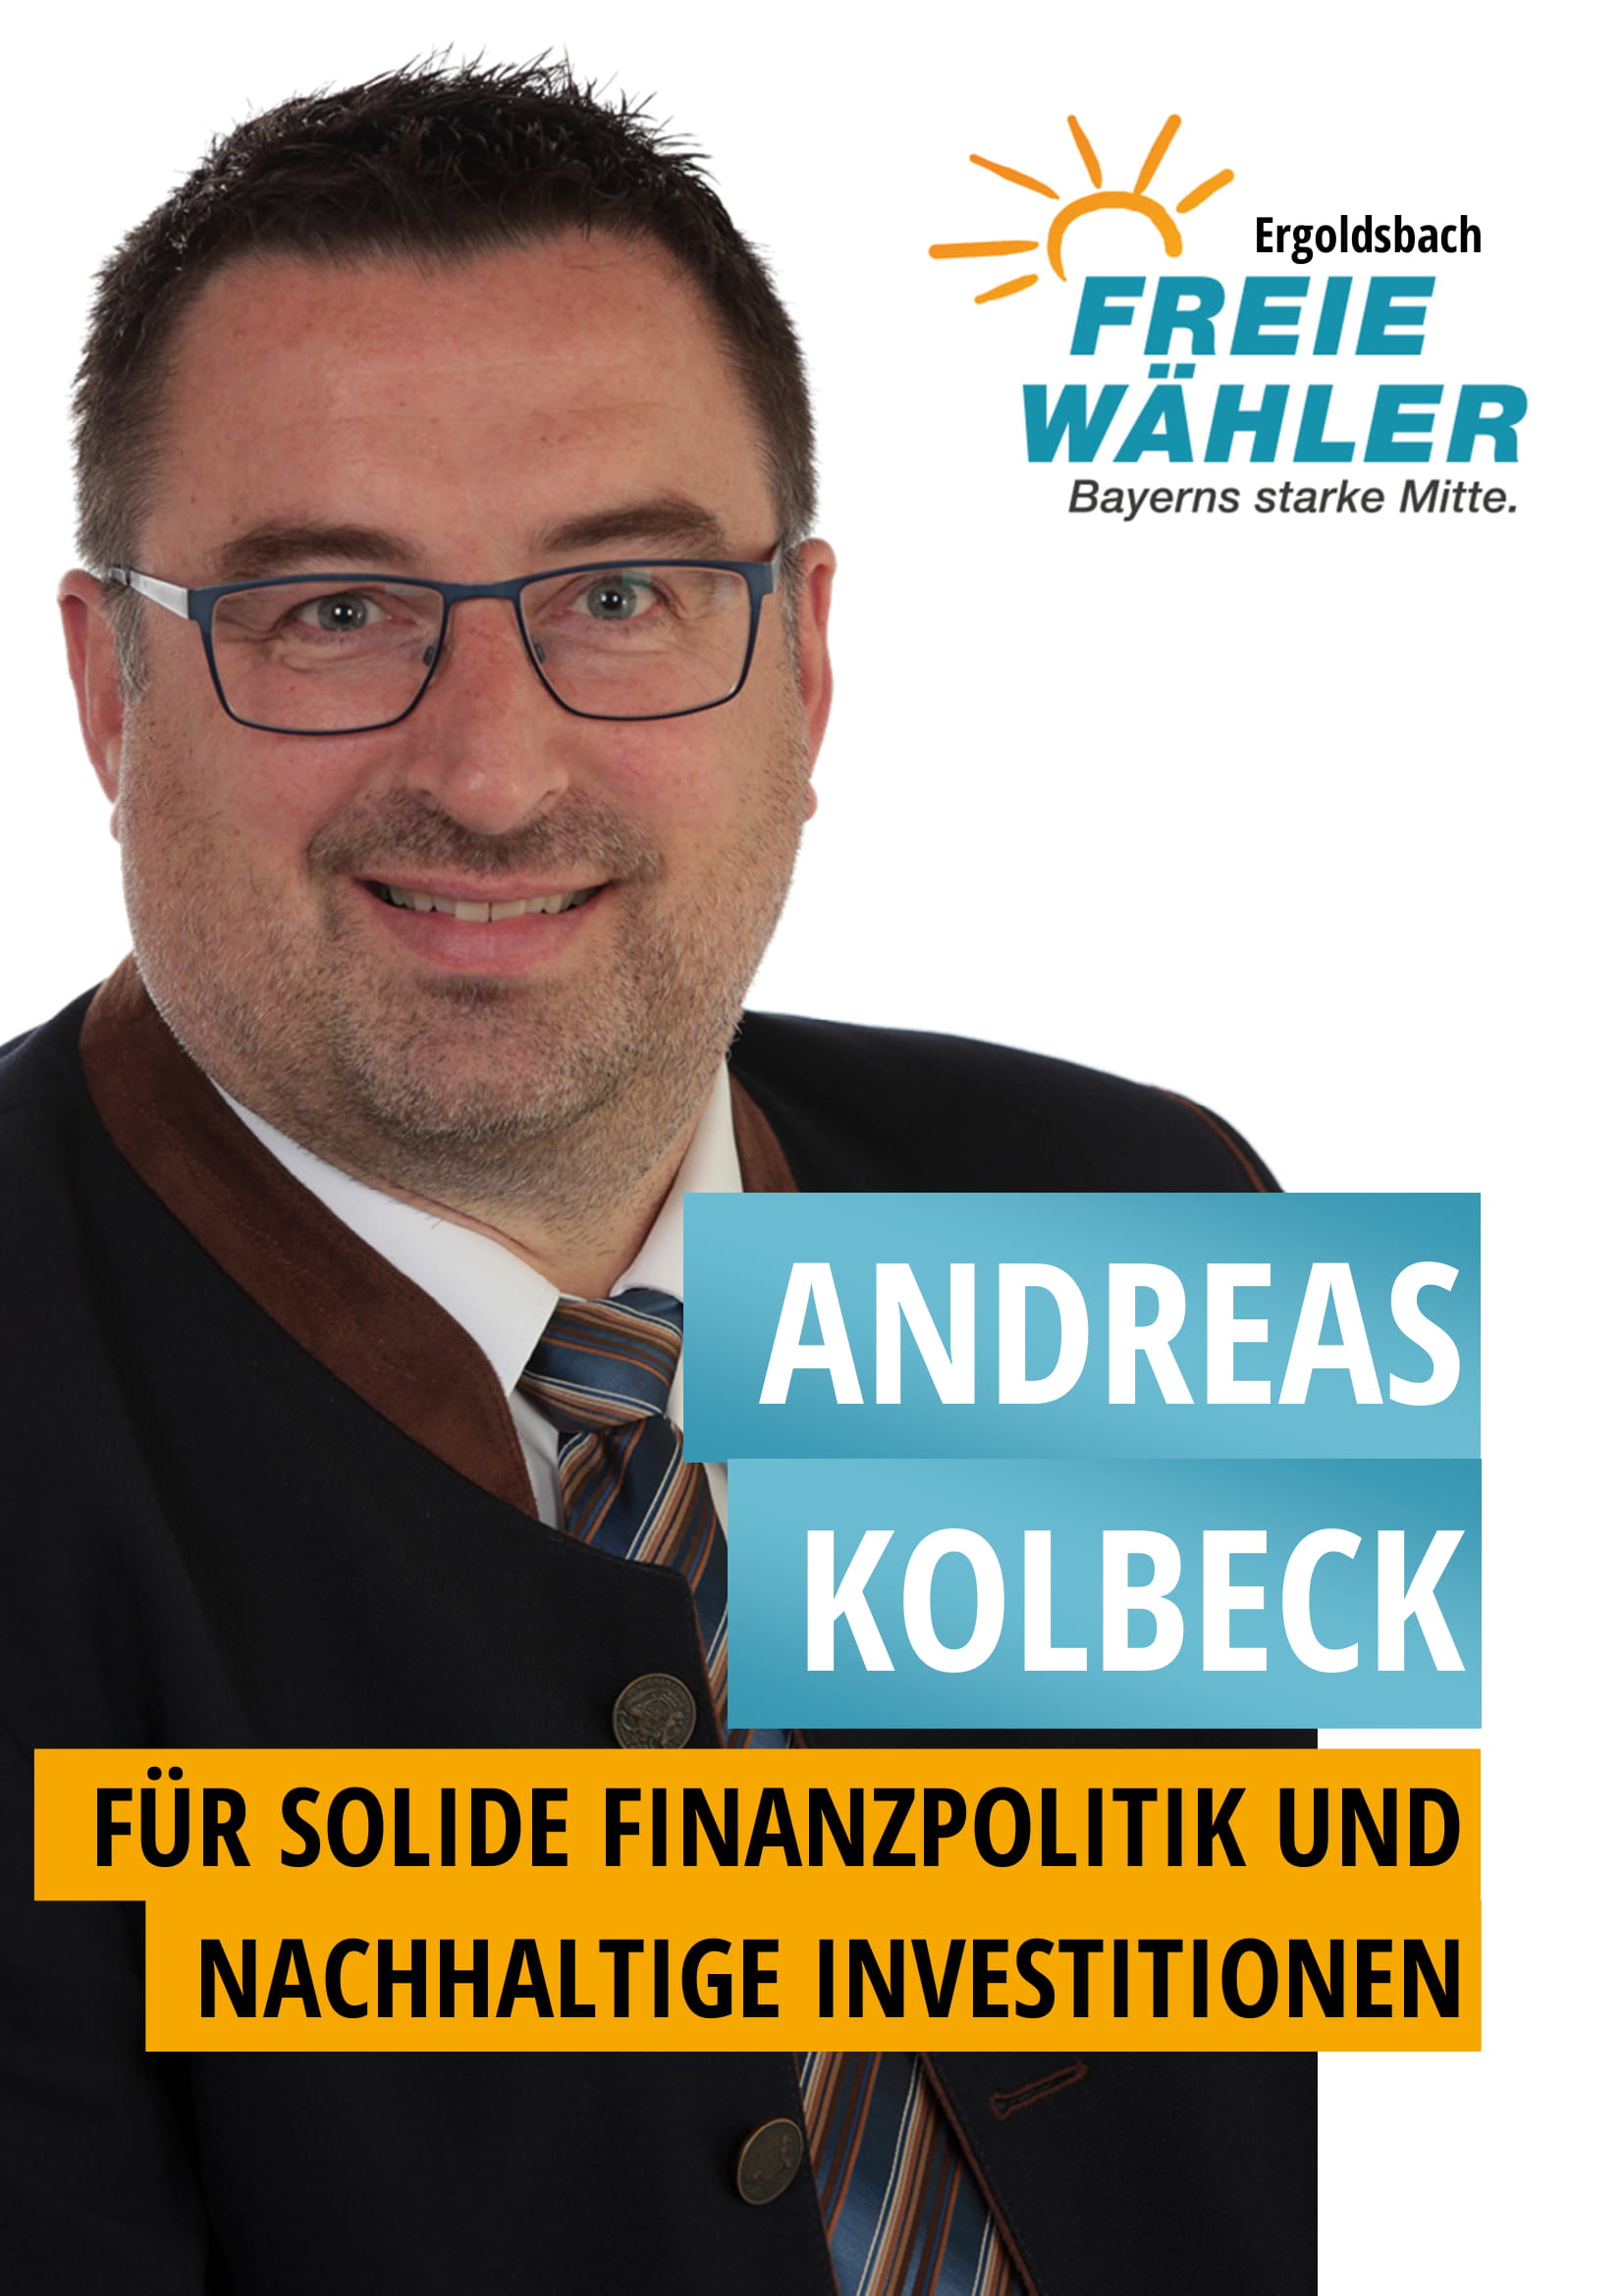 Andreas Kolbeck